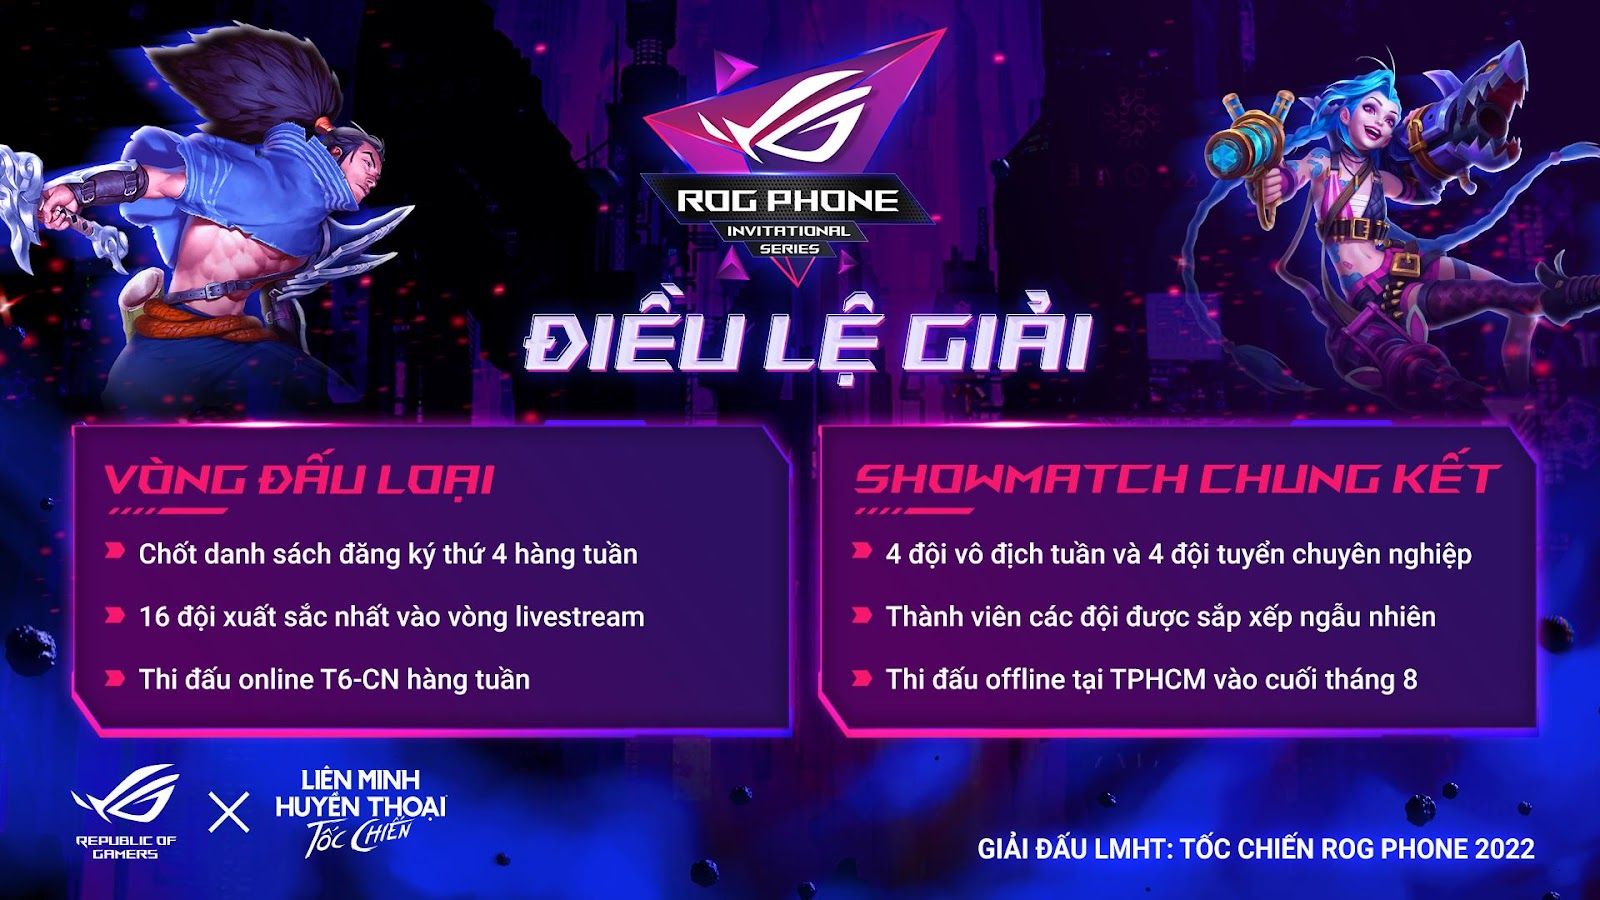 ASUS Republic of Gamers và VNG công bố giải đấu ROG Phone Invitational Series 2022 bộ môn thể thao điện tử Liên Minh Huyền Thoại: Tốc Chiến